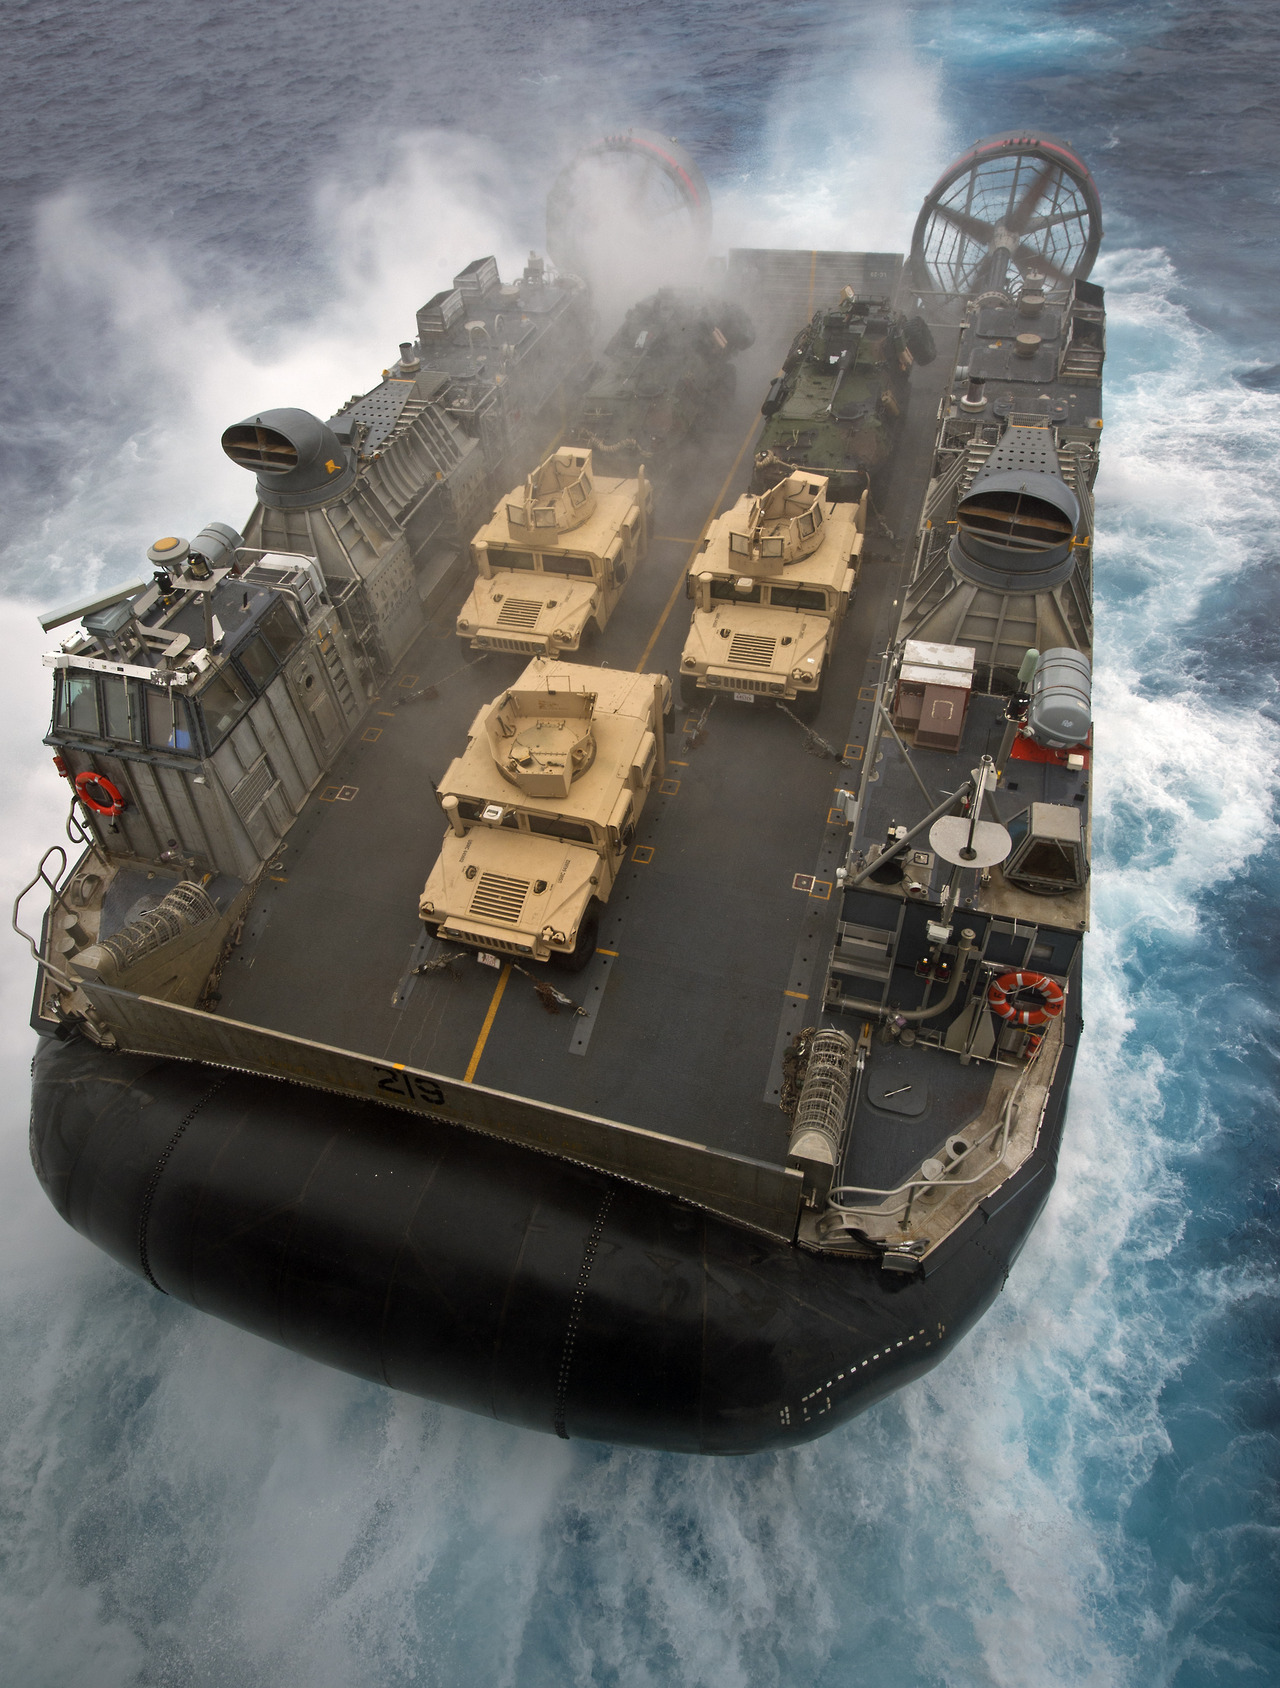 パルサー220 hd壁紙1080p,車両,輸送する,船,軍艦,水陸両用戦争船